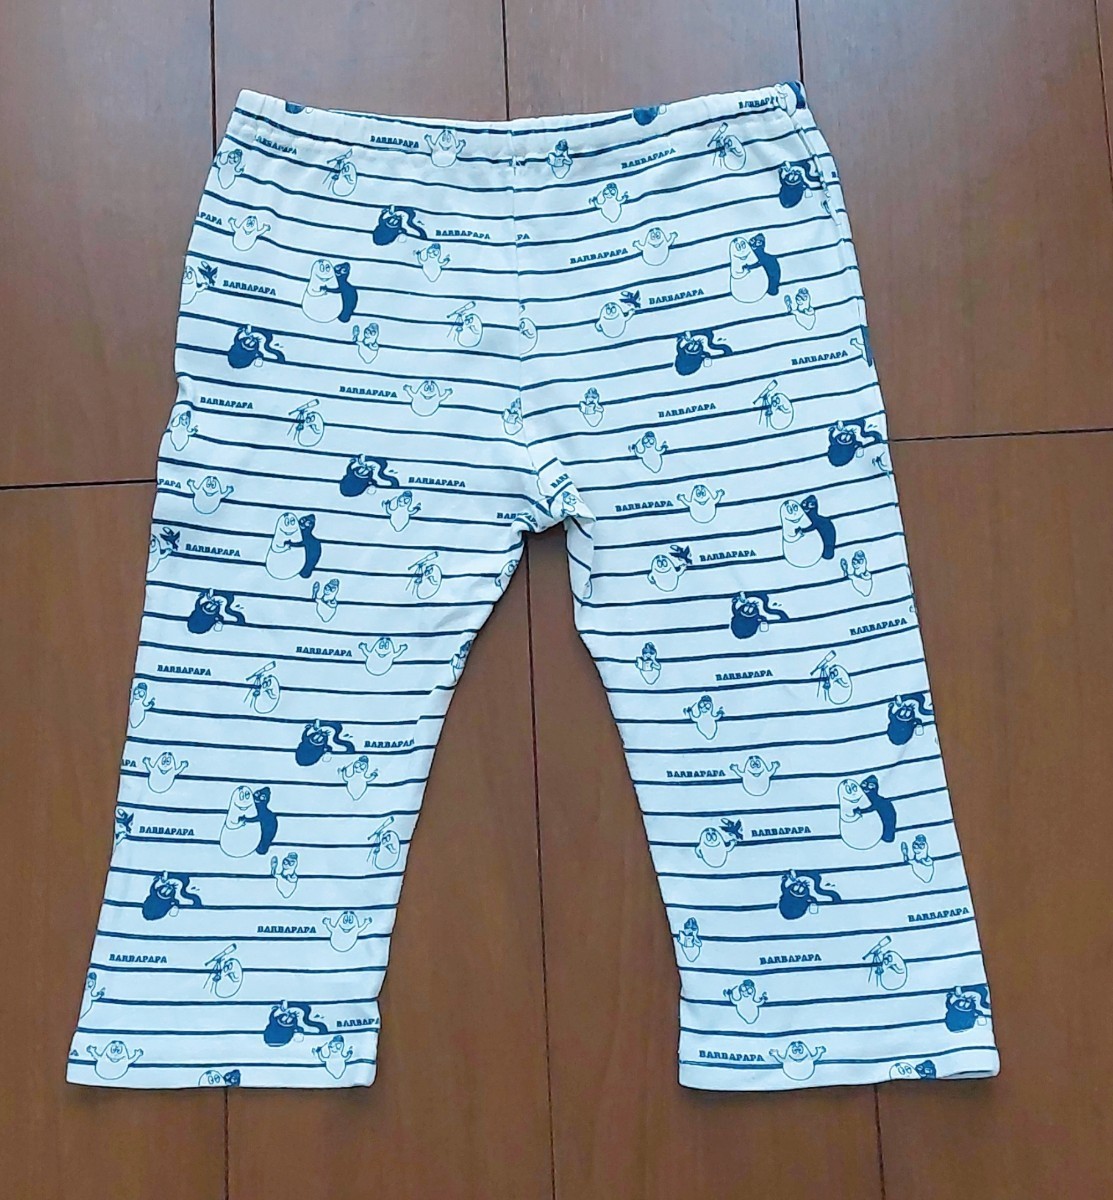  Barbapapa пижама одежда для дома -95 верх и низ в комплекте 